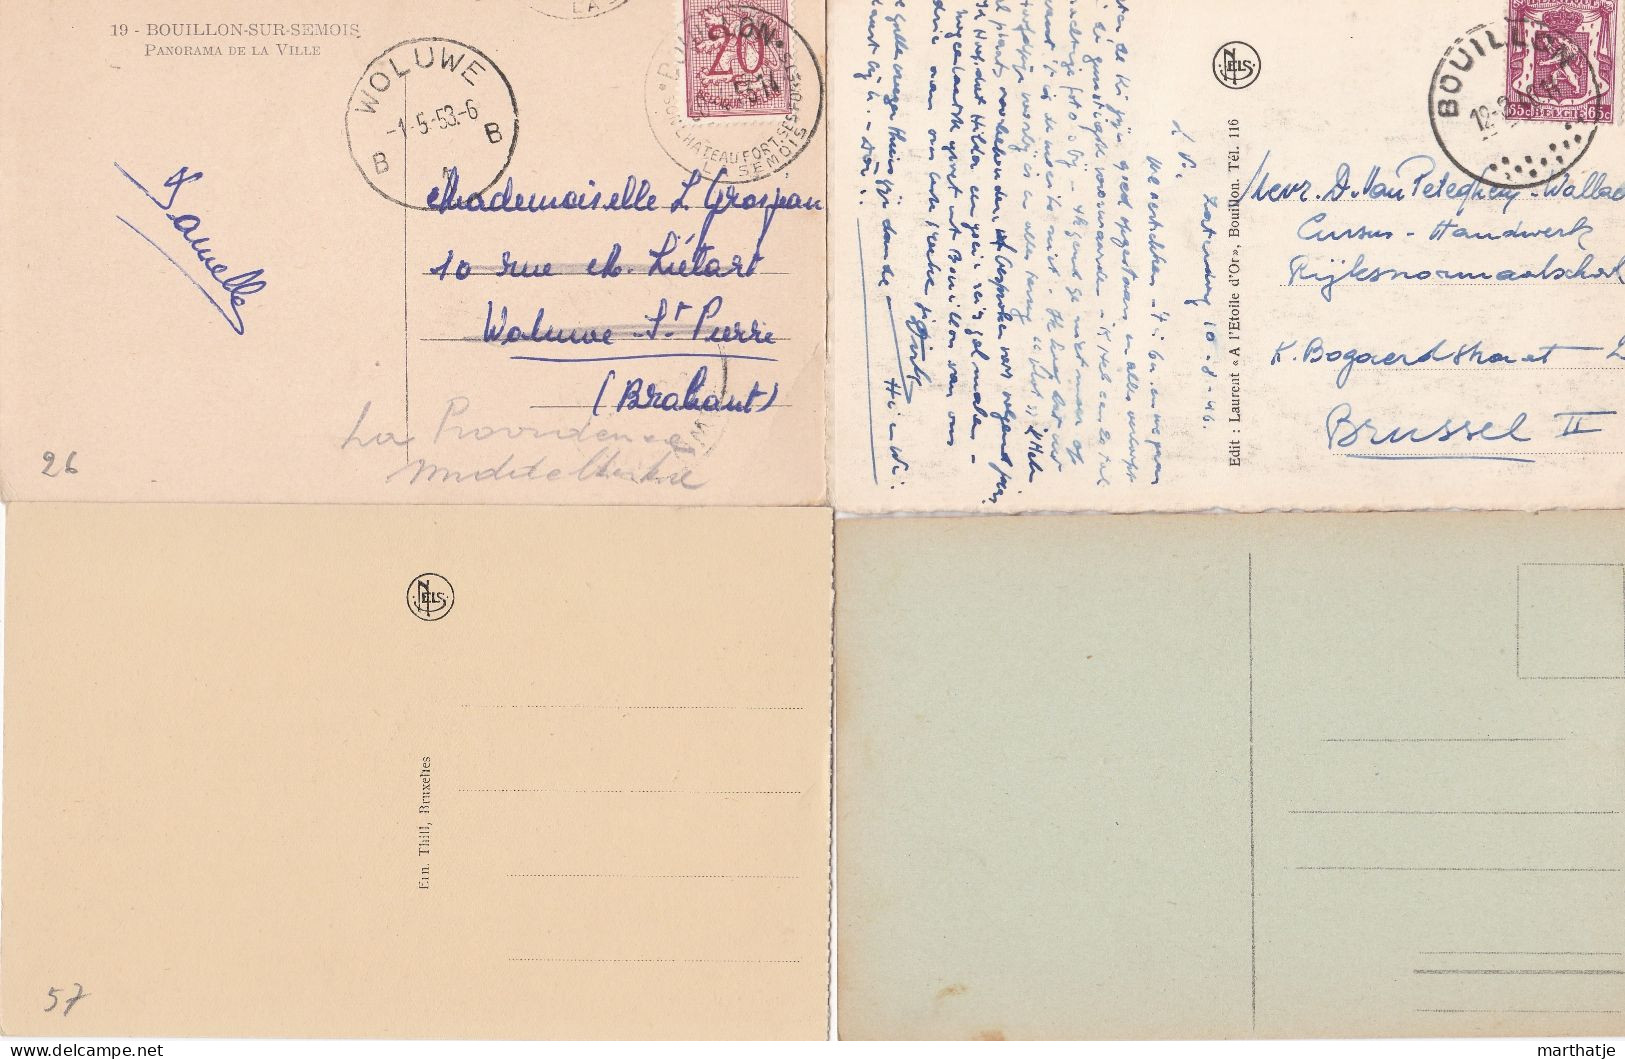 39 cartes postales de Bouillon - province Luxemburg - Belgique